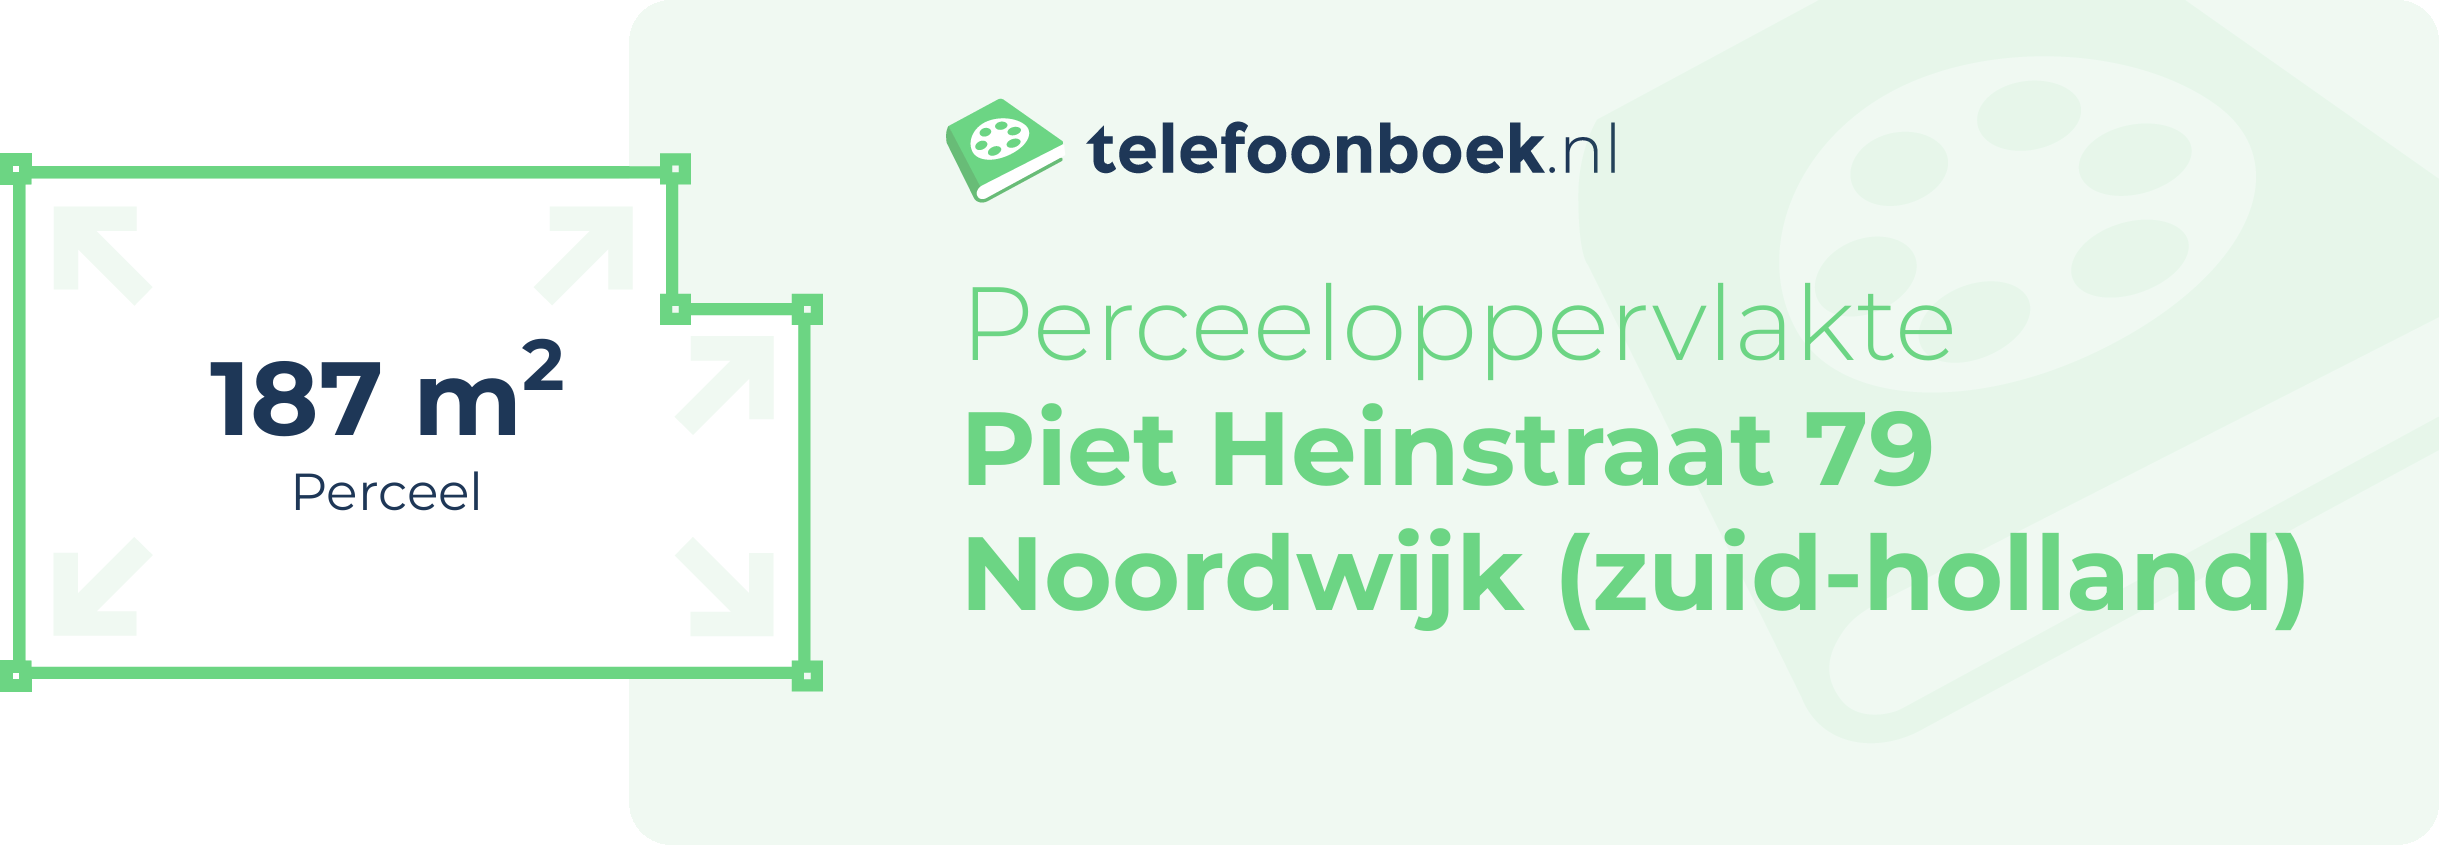 Perceeloppervlakte Piet Heinstraat 79 Noordwijk (Zuid-Holland)